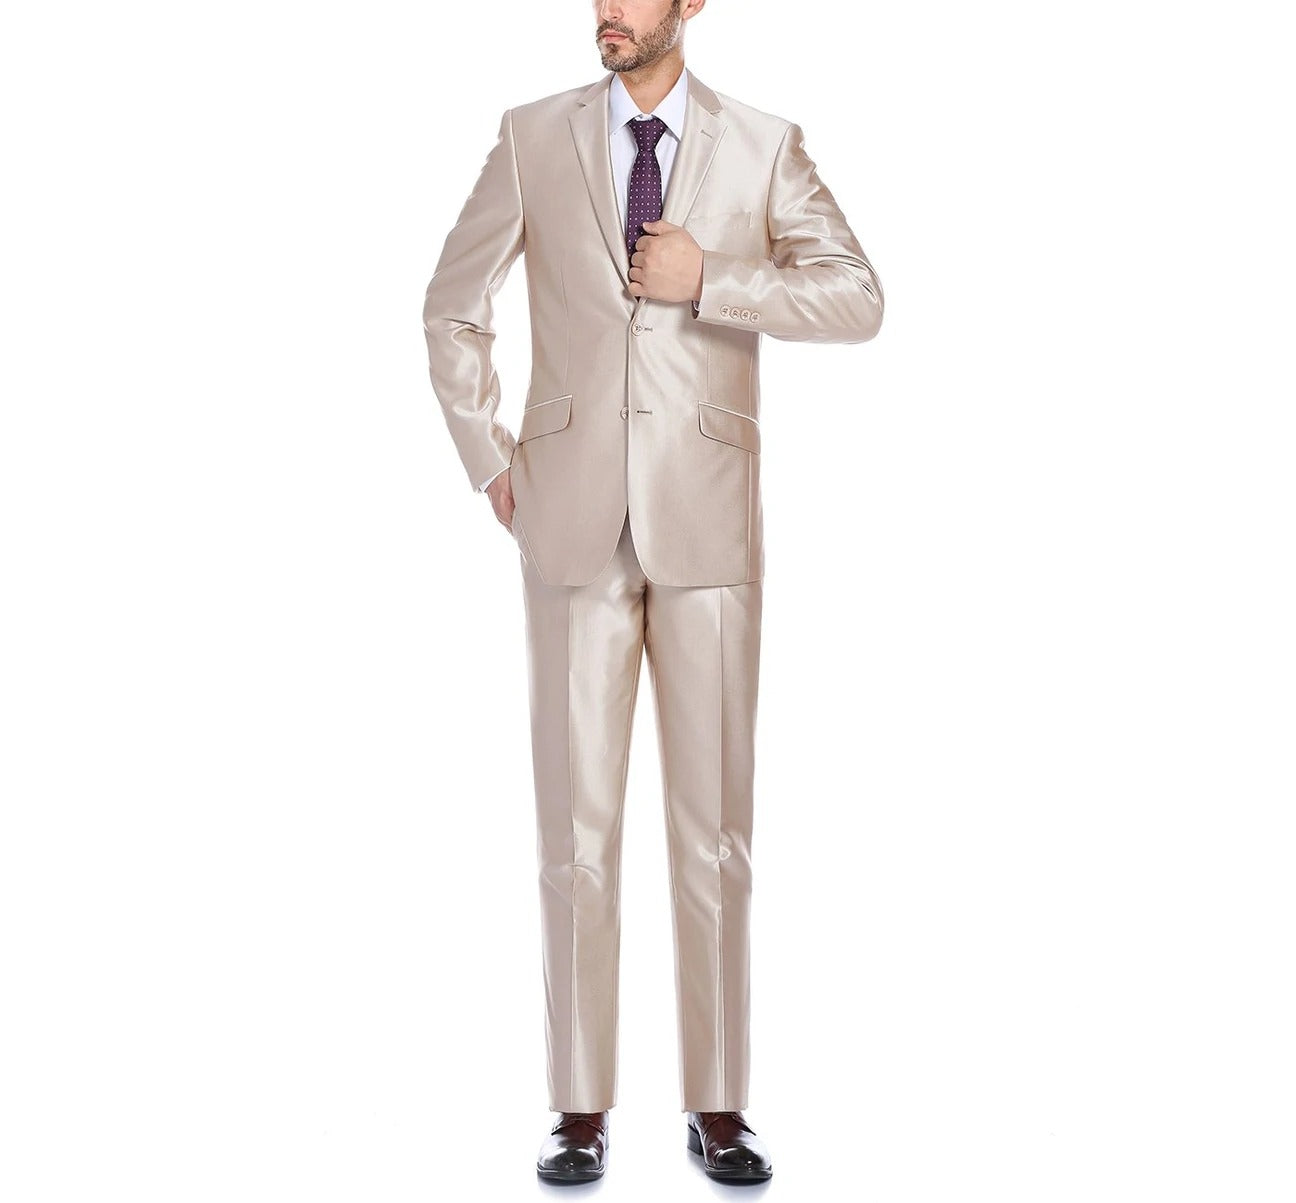 RENOIR Sharkskin Slim Fit Italian Styled Two Piece Suit 207-3